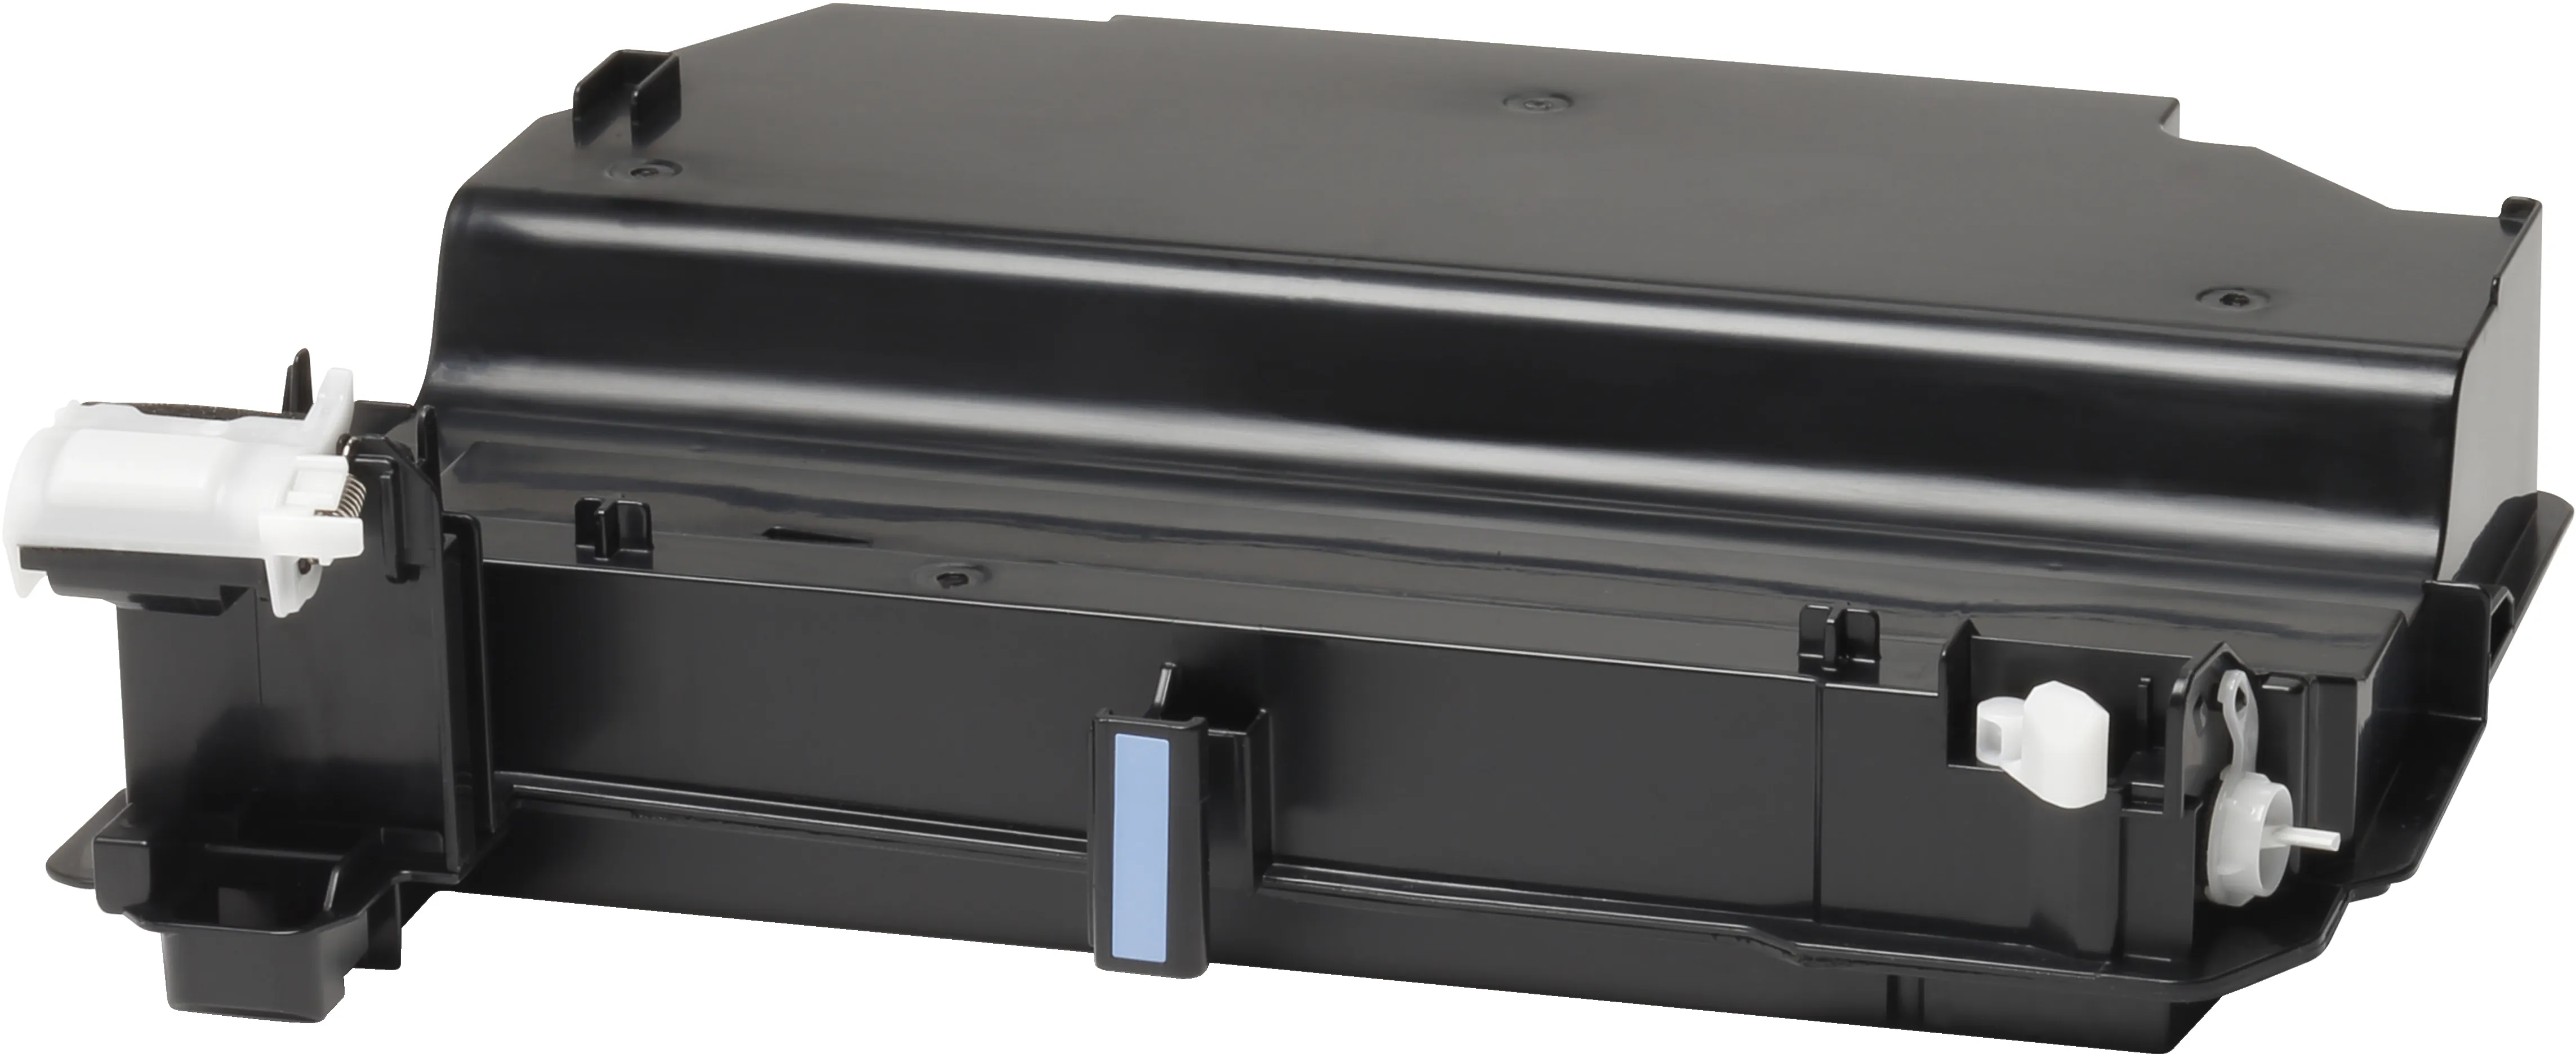 Vente HP LaserJet Toner Collection Unit HP au meilleur prix - visuel 4